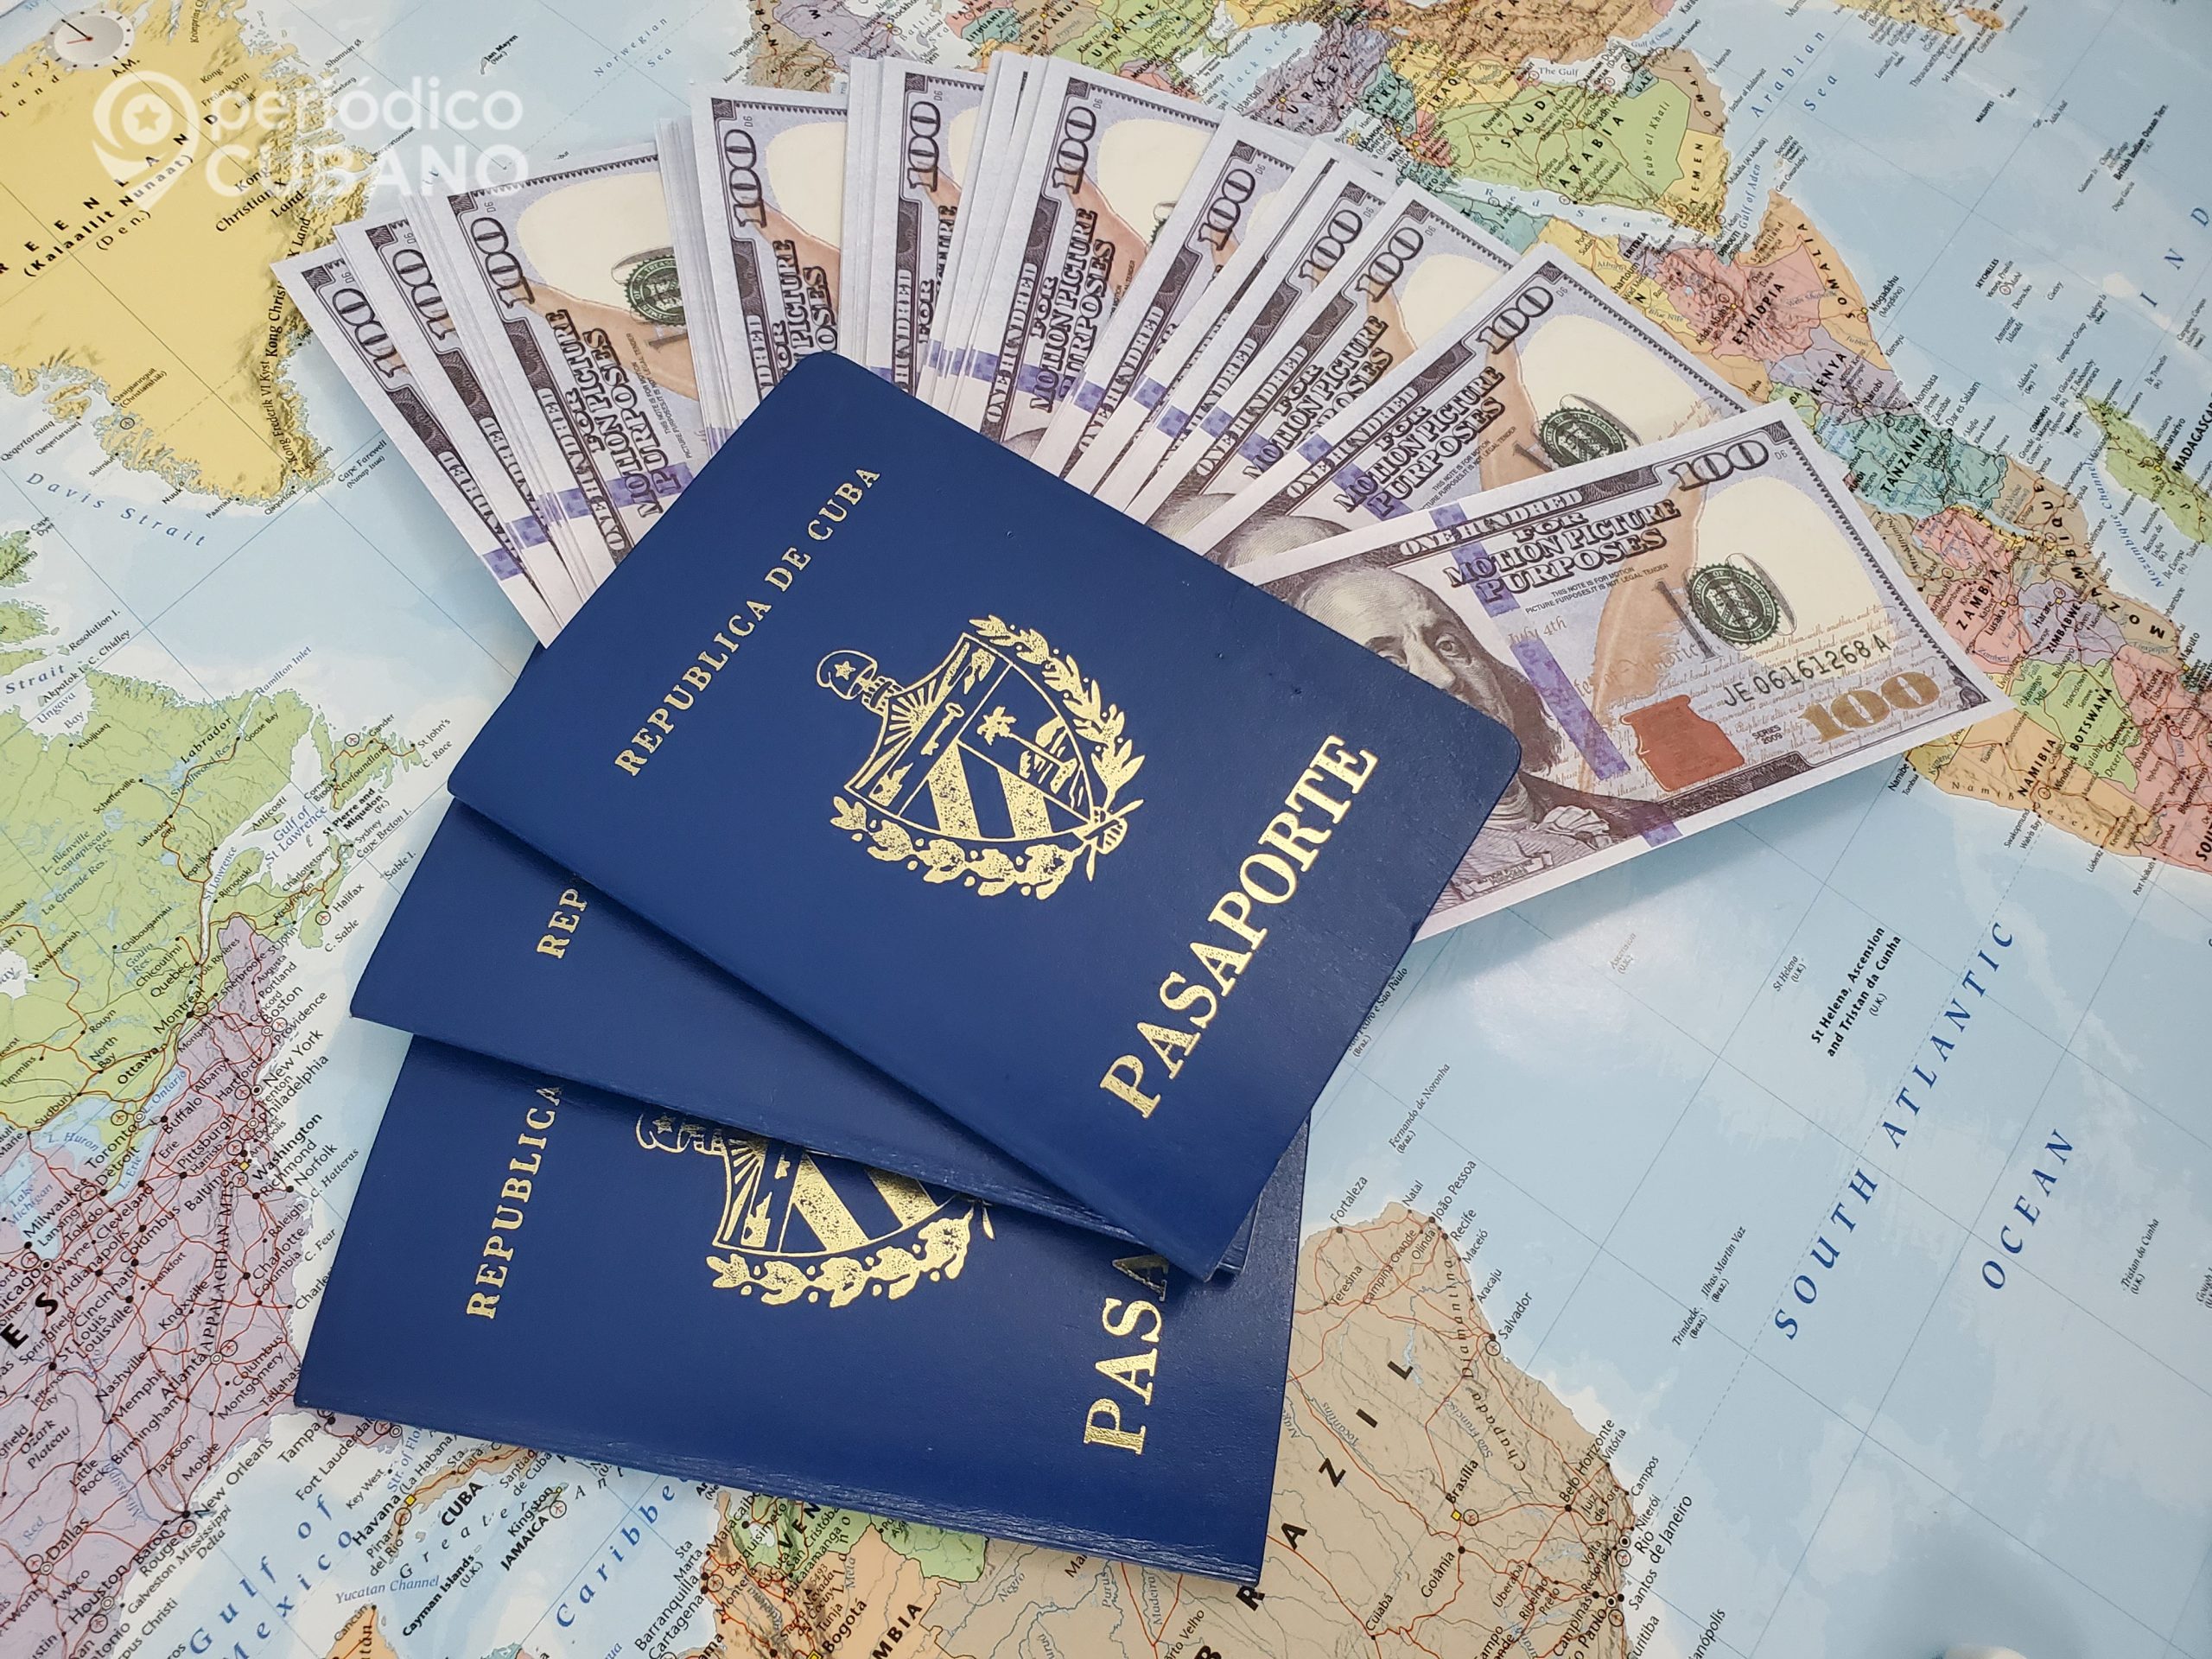 Cambian en 2023 las visas americanas que los cubanos solicitan para viajar a Estados Unidos